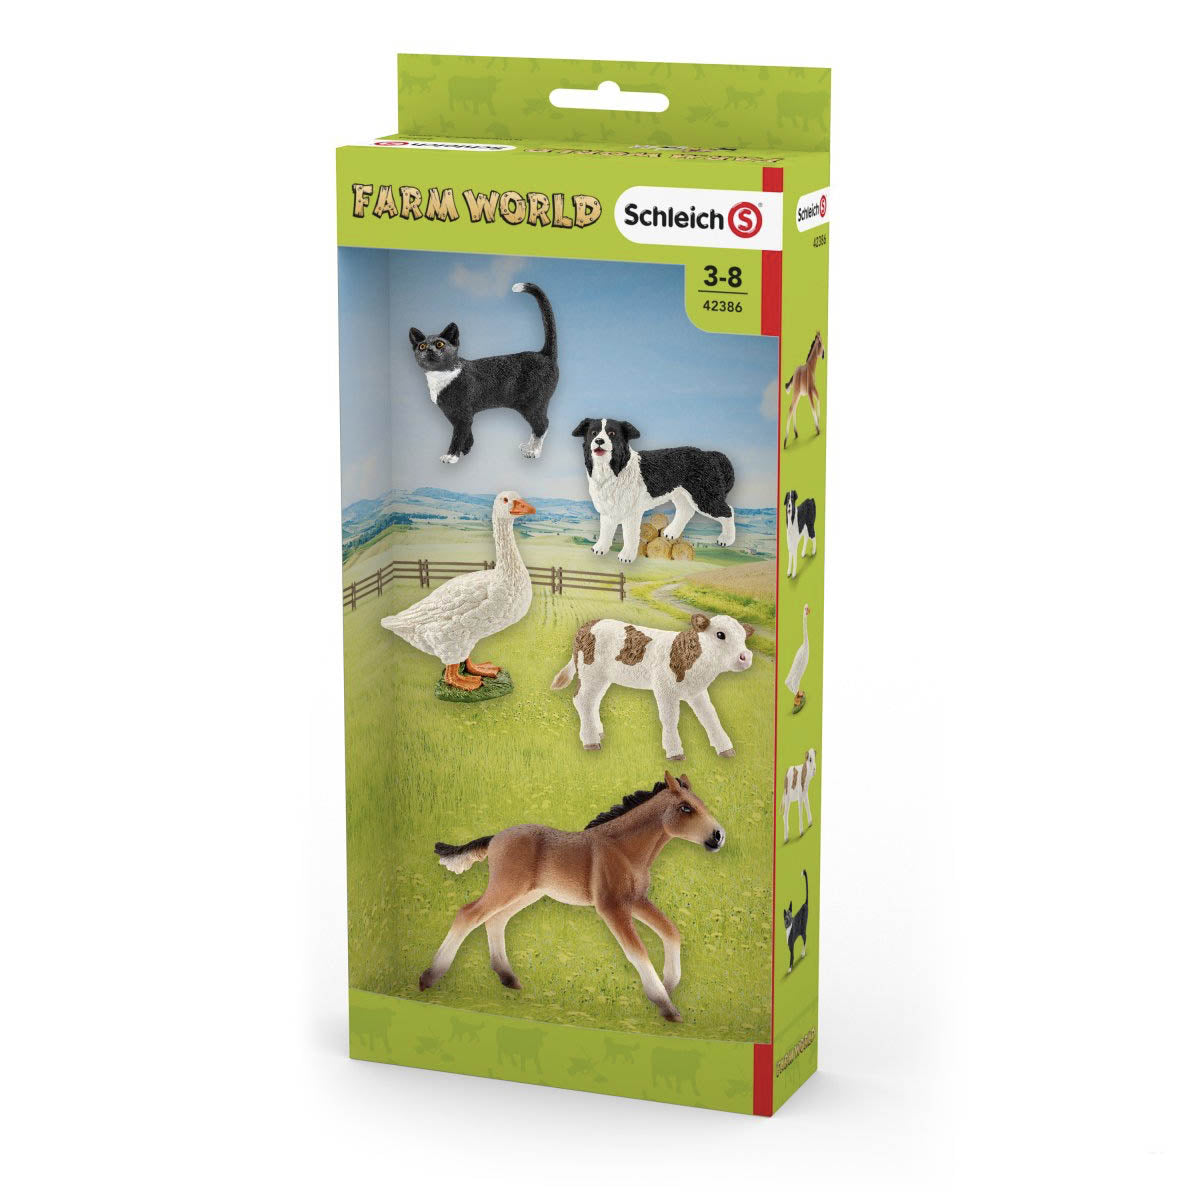 Schleich Farm World Animal Set 42386 Packaging